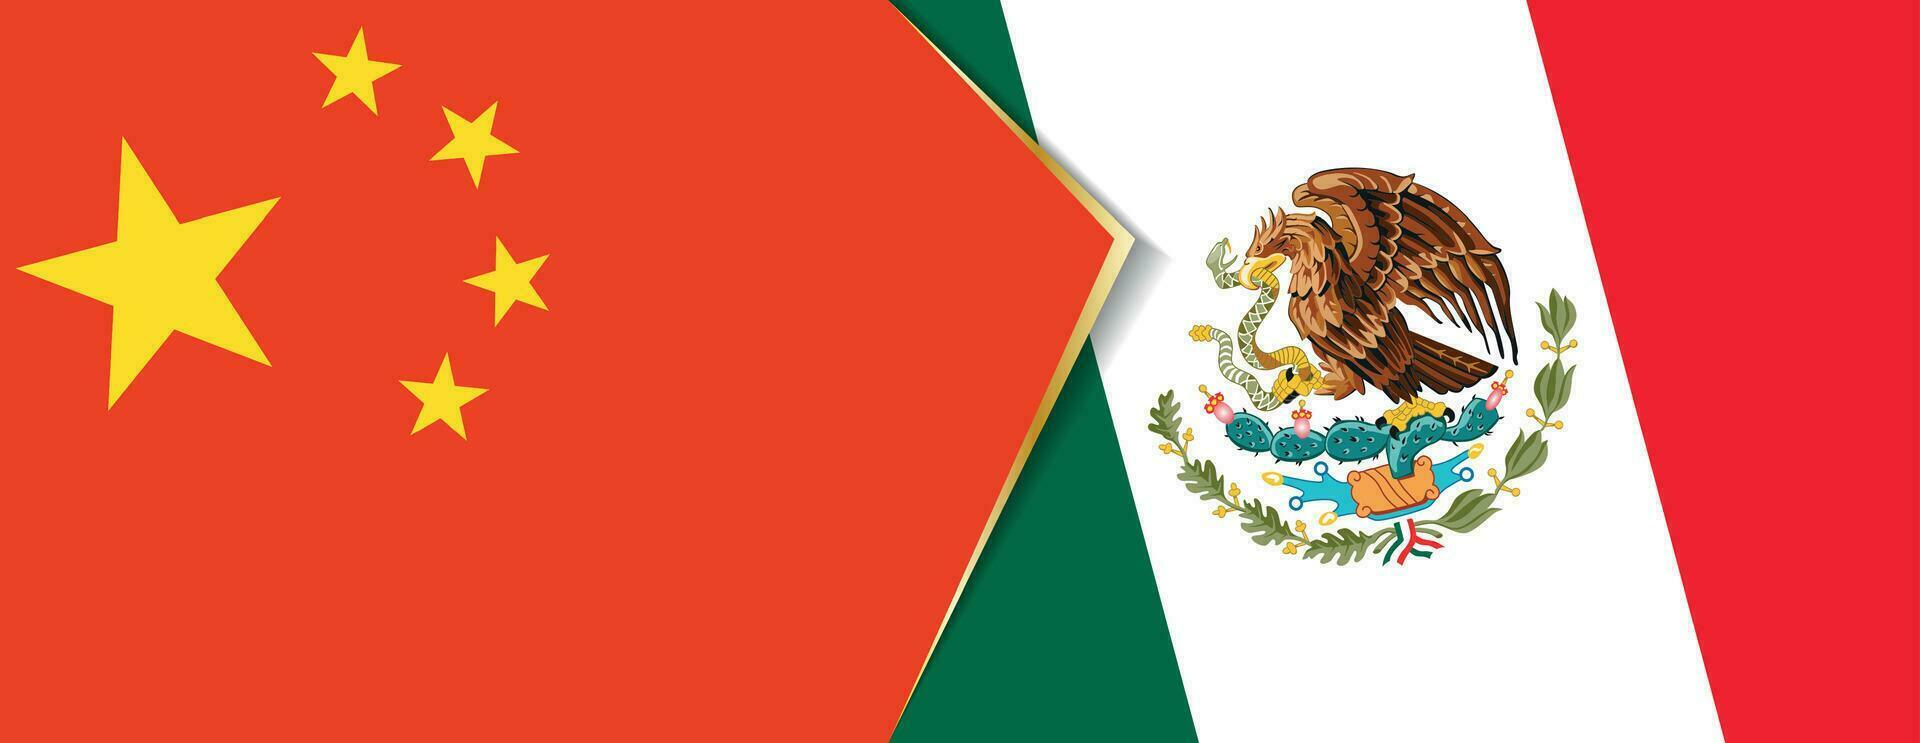 China e México bandeiras, dois vetor bandeiras.